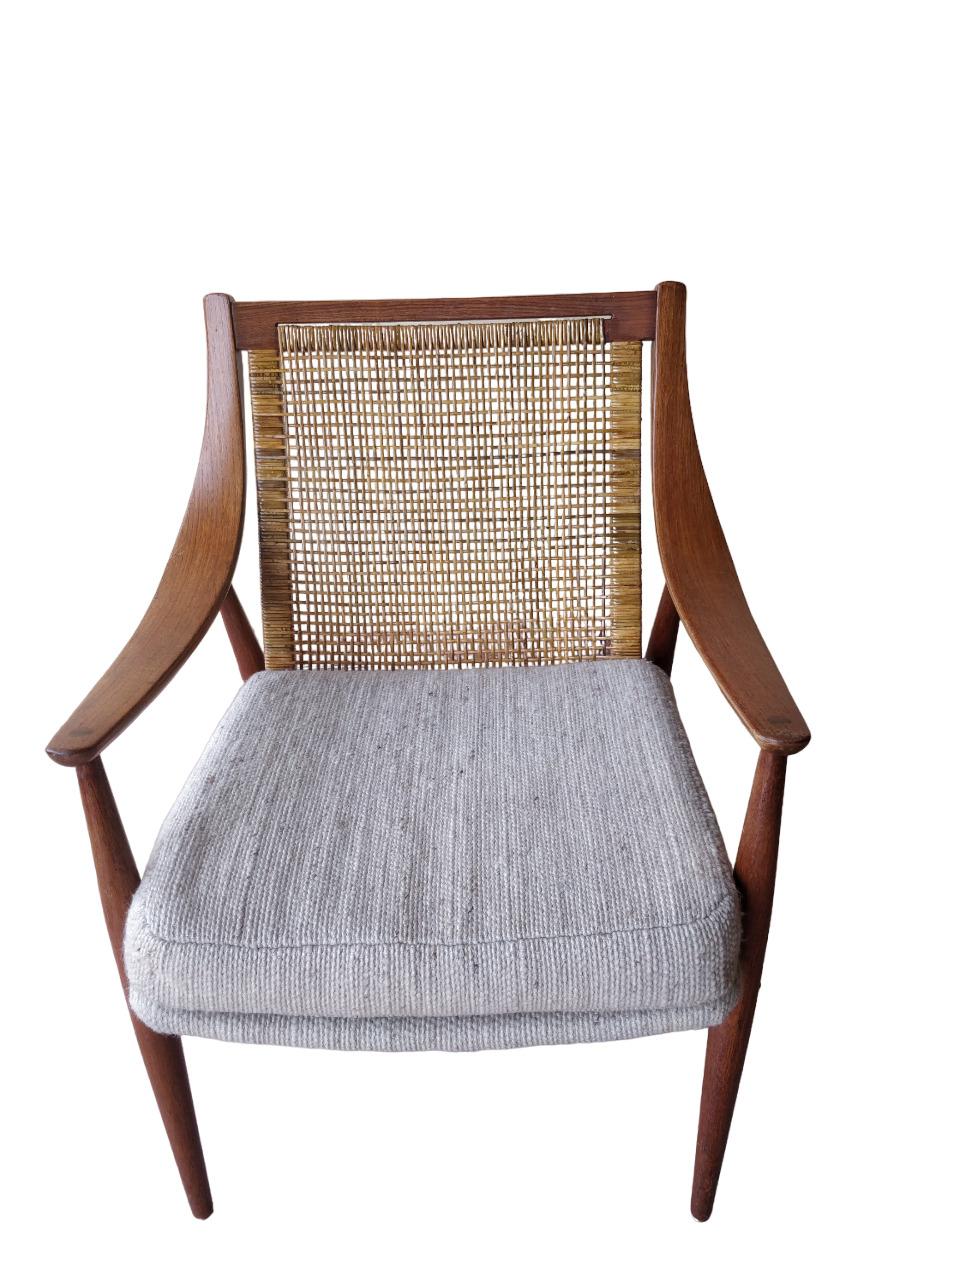 Danois Rare fauteuil Mod. 147 Peter Hvidt & Orla Molgaard-Nielsen pour France & Søn en vente